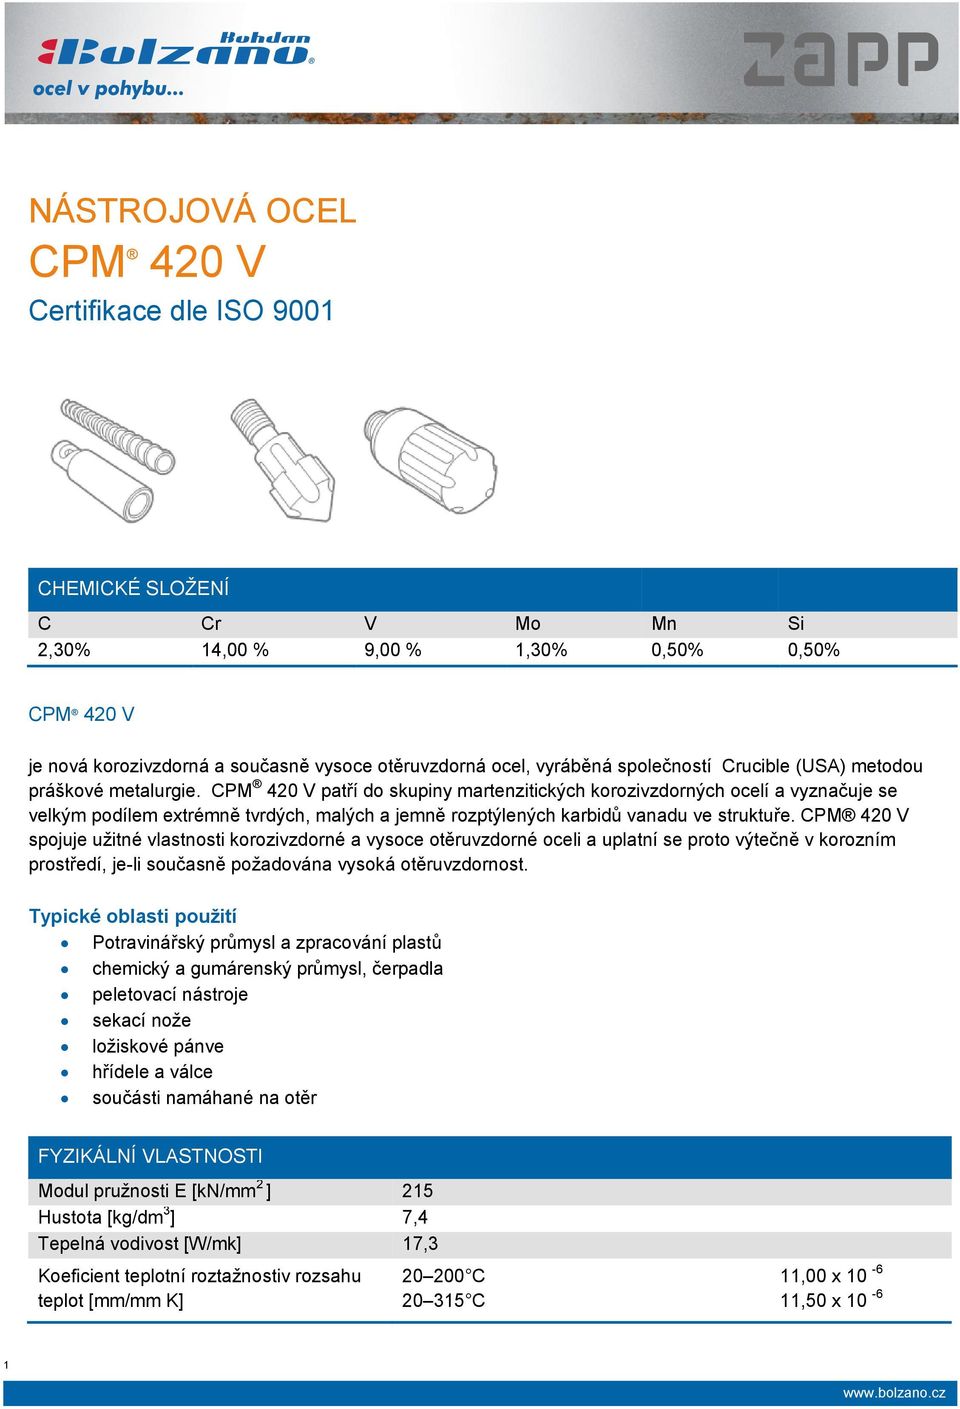 CPM 420 V patří do skupiny martenzitických korozivzdorných ocelí a vyznačuje se velkým podílem extrémně tvrdých, malých a jemně rozptýlených karbidů vanadu ve struktuře.